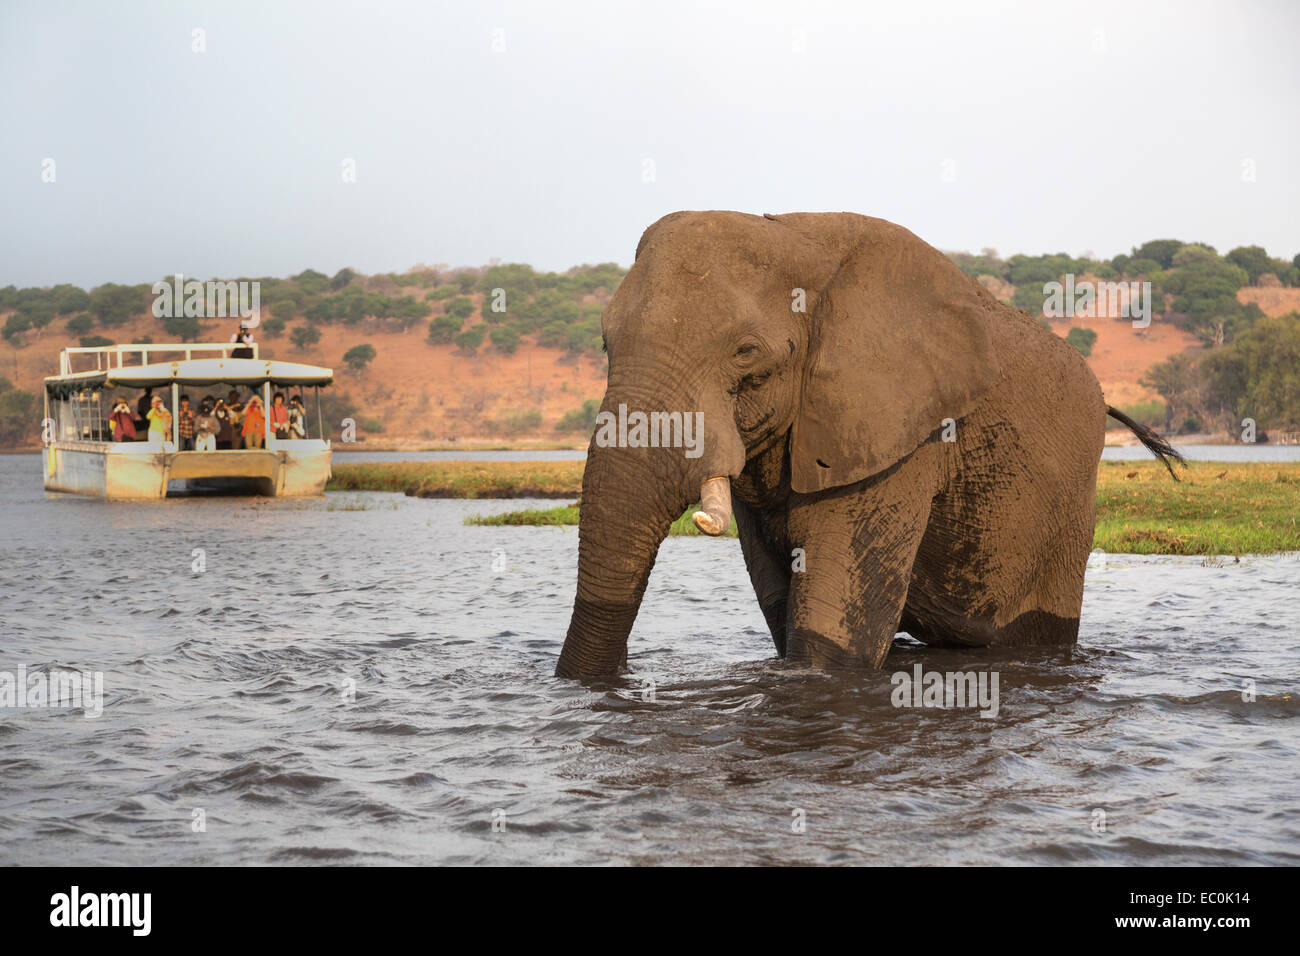 African elephant (Loxodonta africana) and tourists, Chobe National Park, Botswana Stock Photo